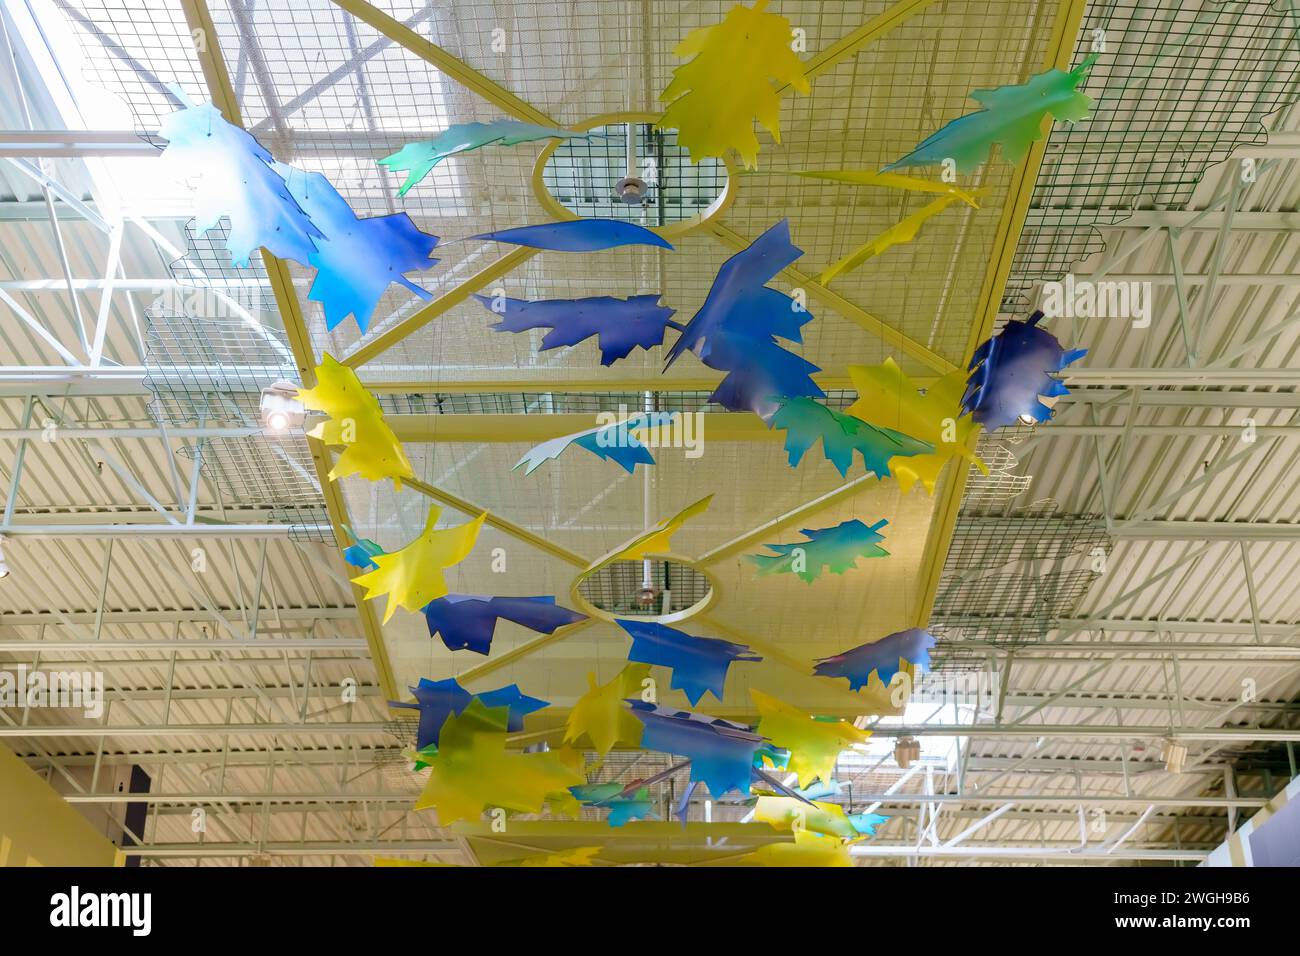 Dekoration in blauen und gelben Formen. Die Kunstinstallation ziert die Decke des Einkaufszentrums Vaughan Mills. Stockfoto